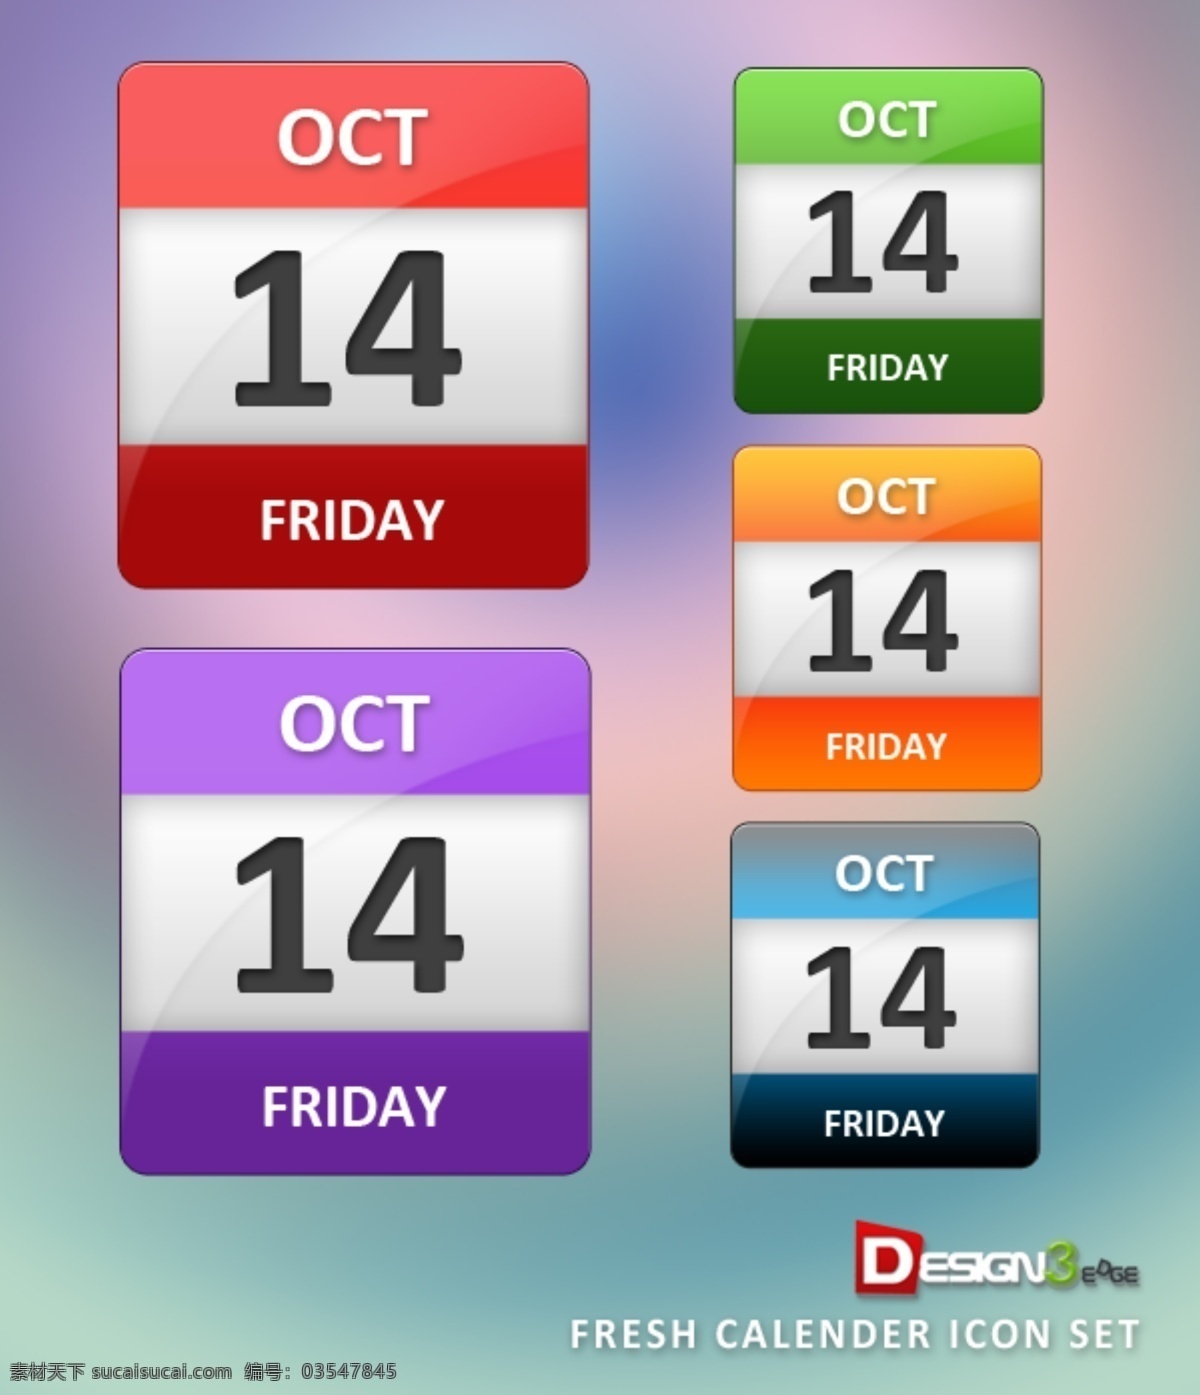 光泽 彩色 日历 图标 集 web 高分辨率 广场 接口 蓝色的 免费 清洁 时尚的 现代的 质量 新鲜的 设计新的 新的 hd 元素 用户界面 ui元素 详细的 天 日期 颜色 丰富多彩的 红色的 psd源文件